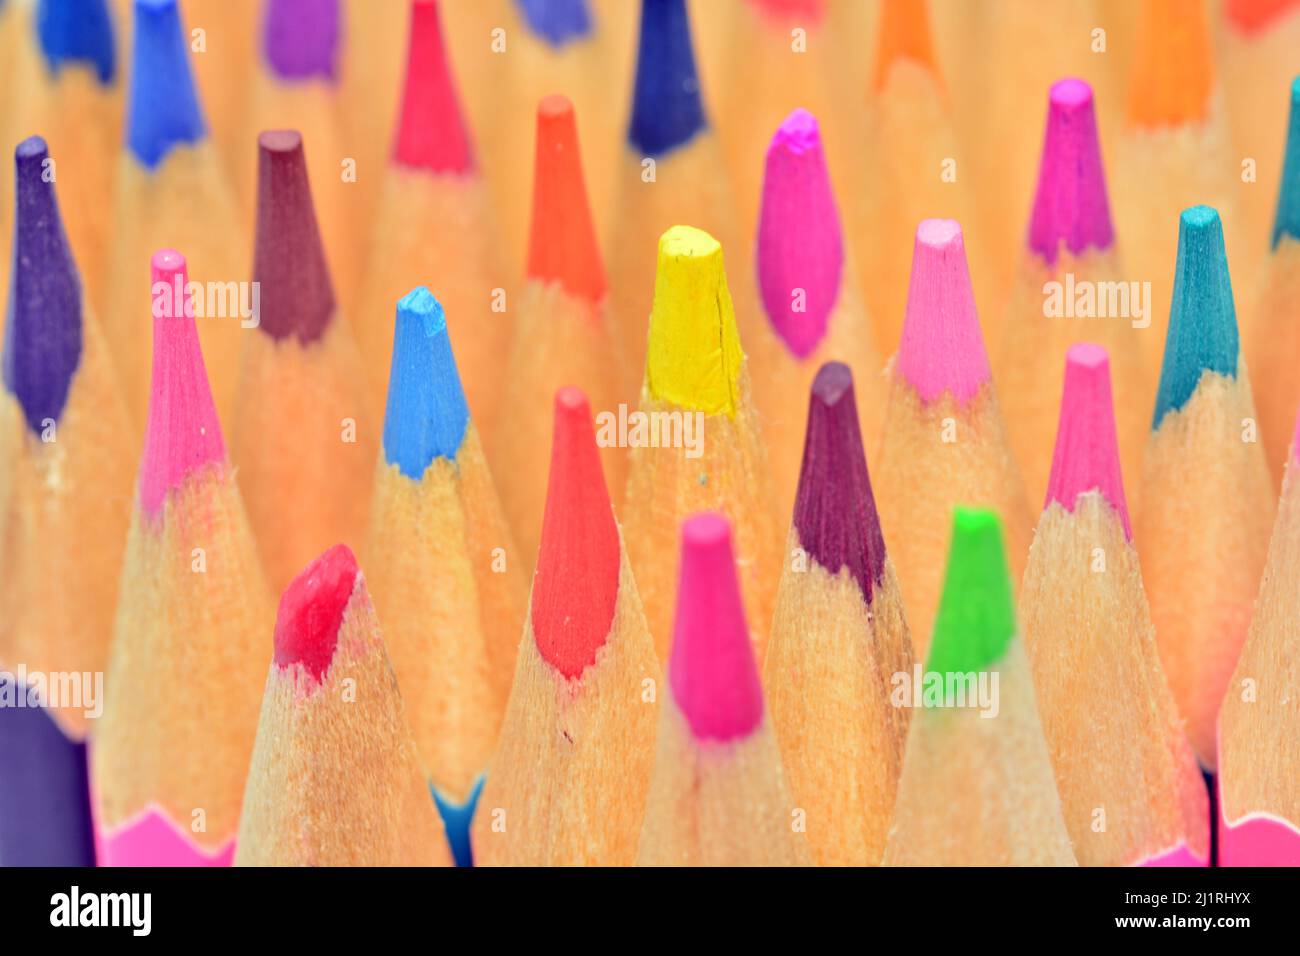 detalles de puntas de lápices de colores, aislado sobre fondo blanco Foto Stock